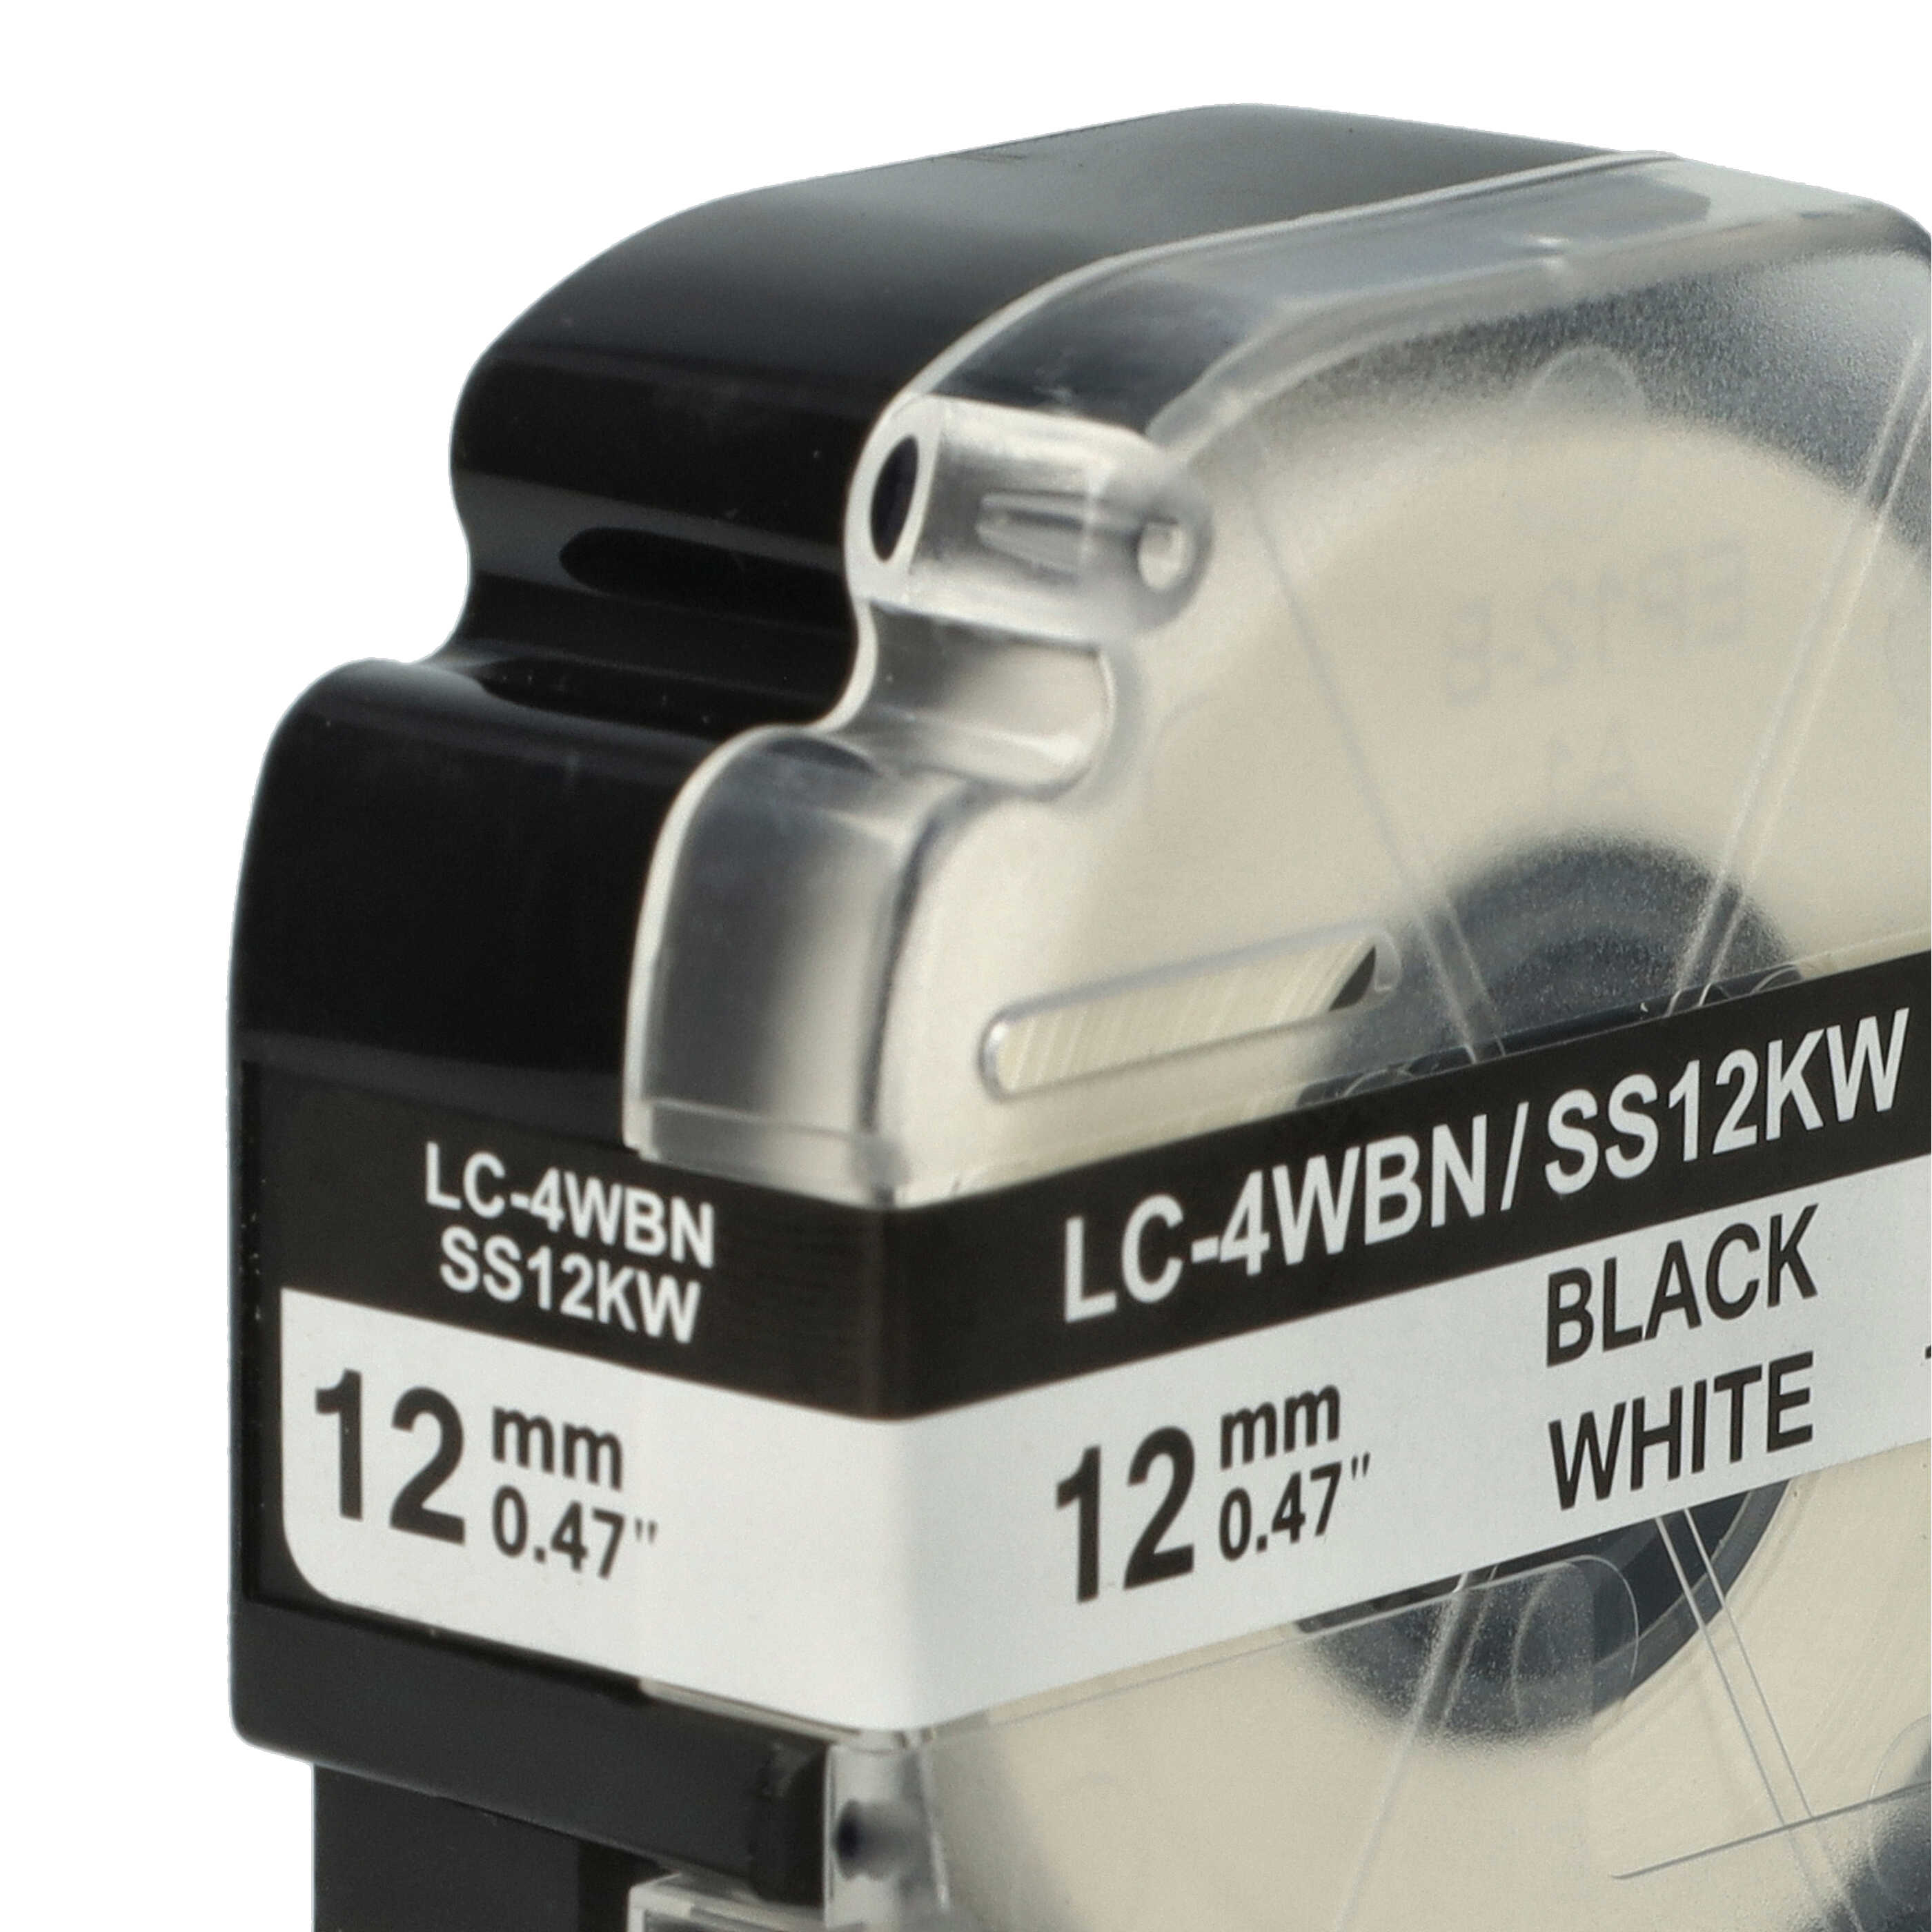 2x Cassetta nastro sostituisce Epson SS12KW, LC-4WBN per etichettatrice Epson 12mm nero su bianco